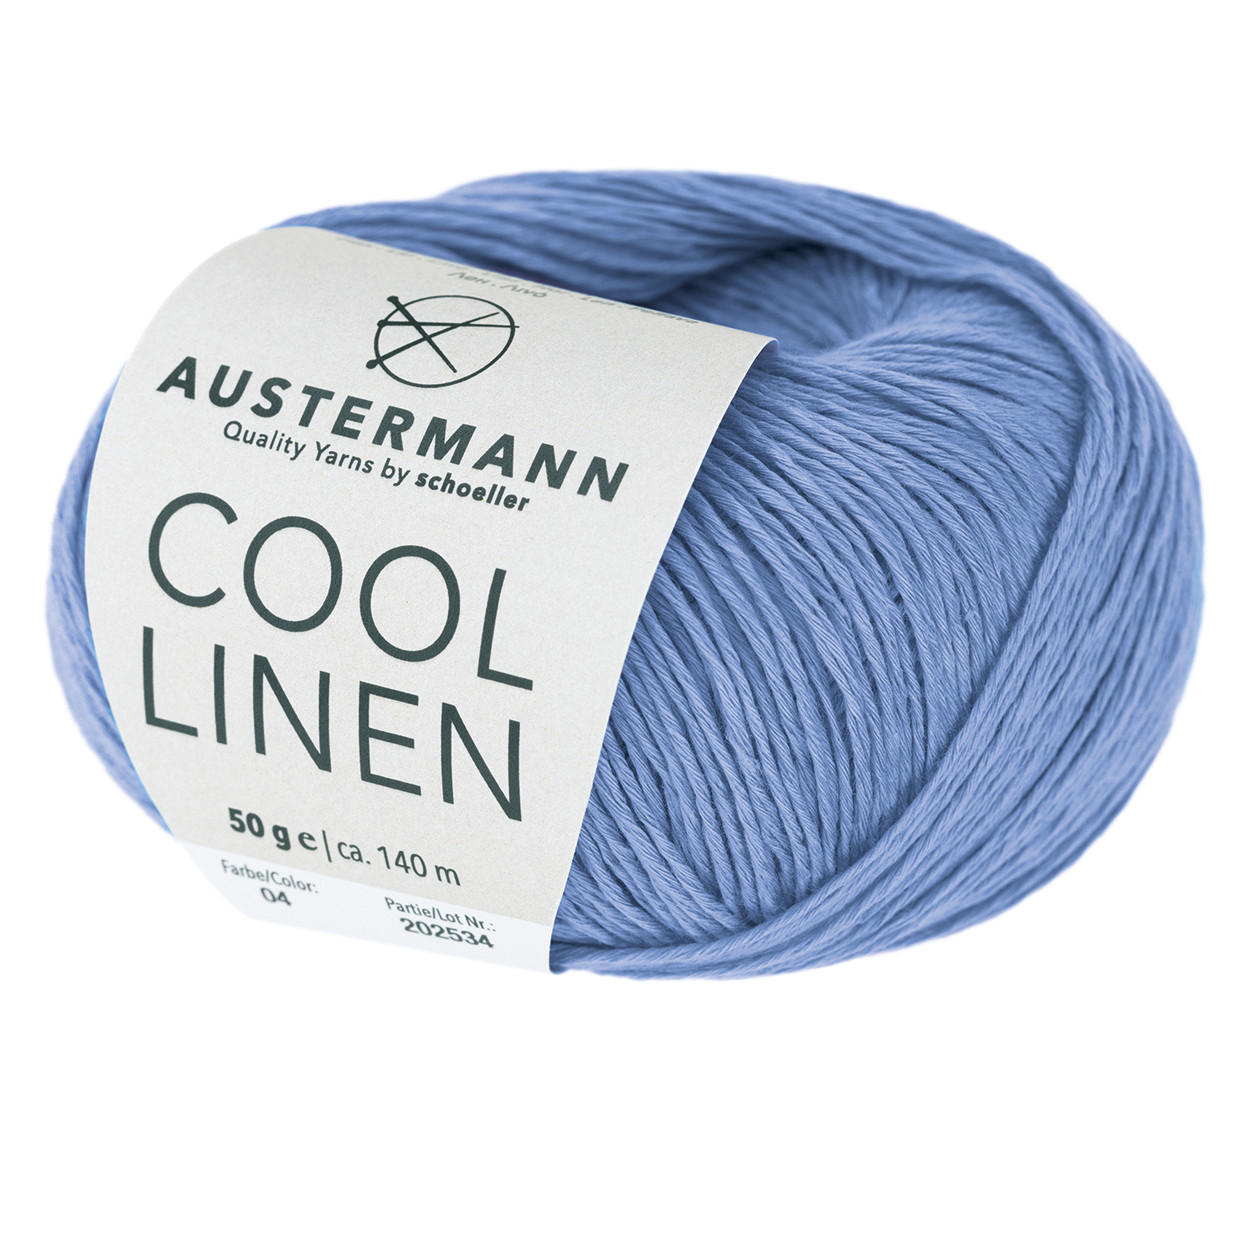 Cool Linen